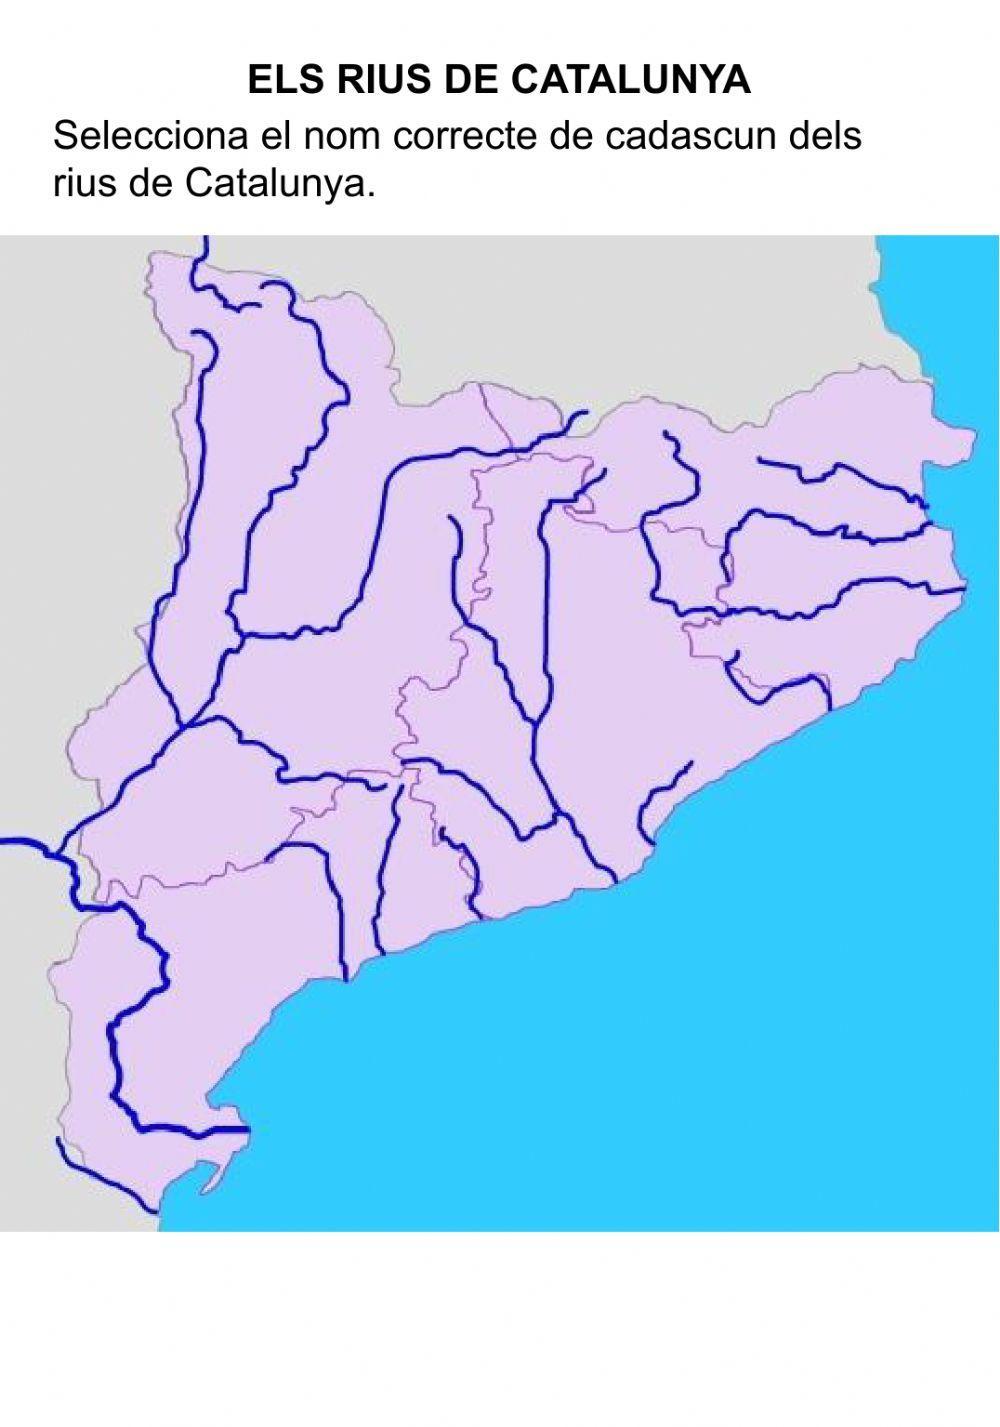 Els rius de Catalunya